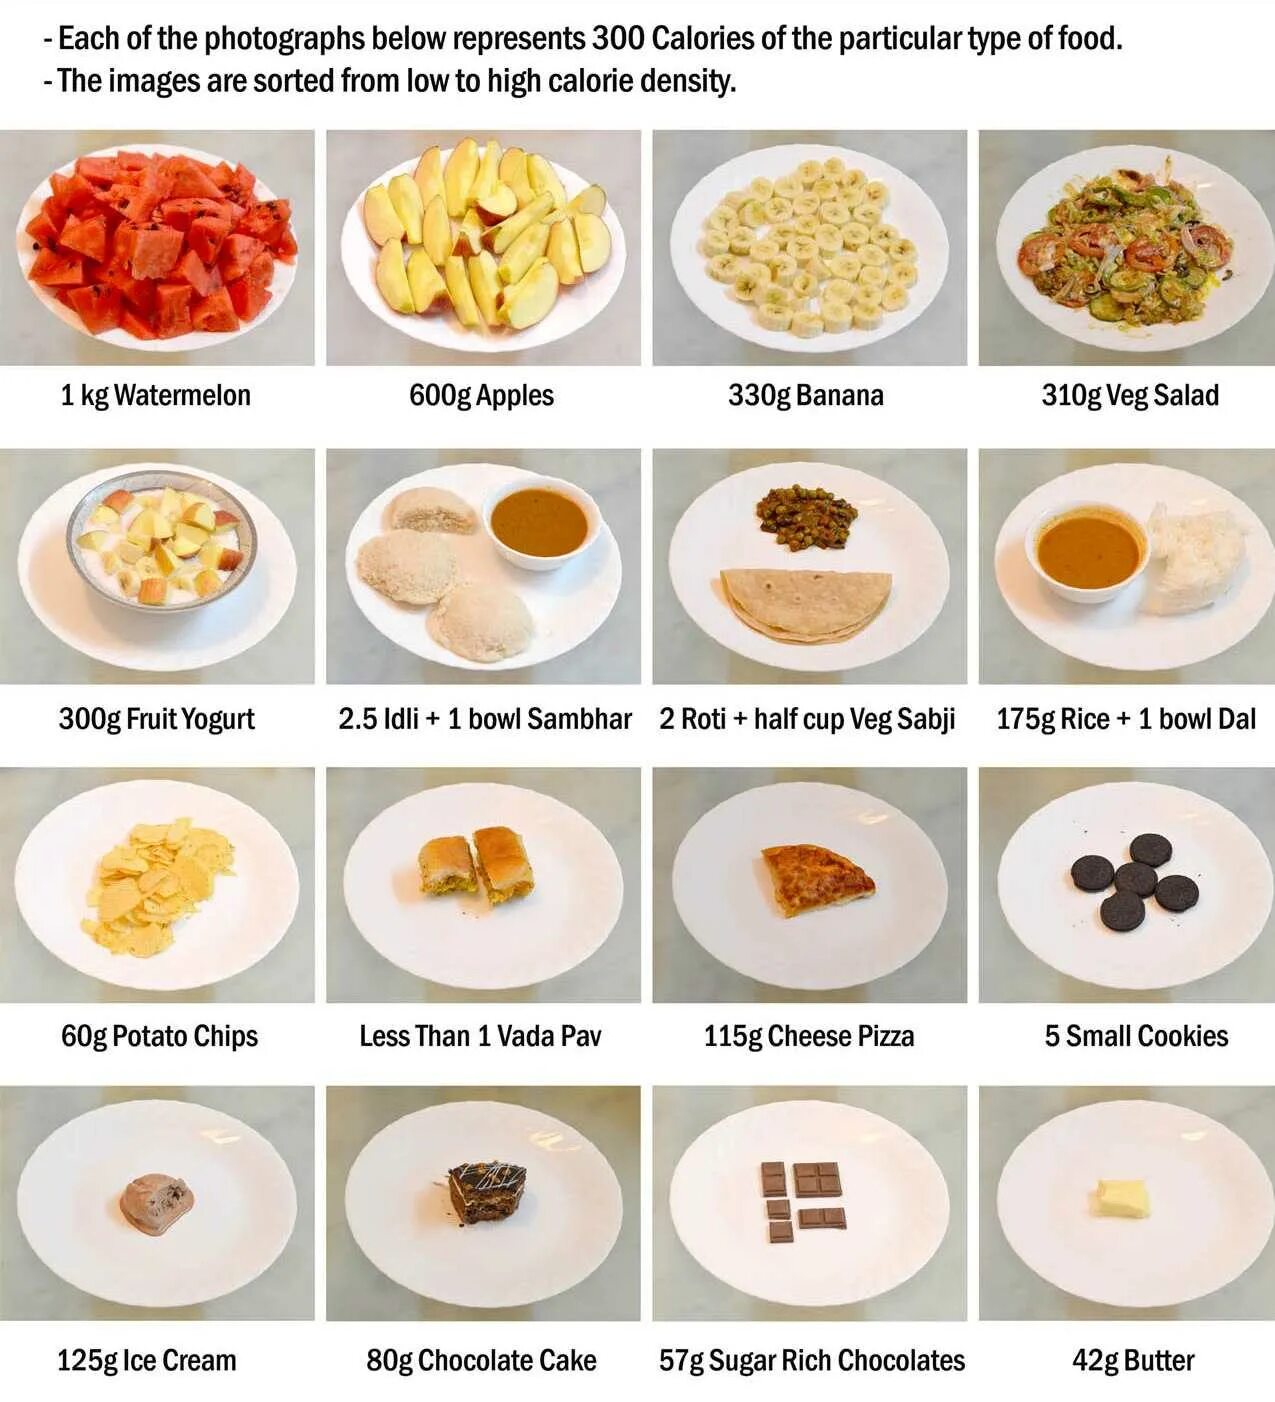 Завтрак на 300 калорий. Блюдо на 300 калорий. Завтраки на 300 килокалорий. Рацион на 300 калорий в день меню.